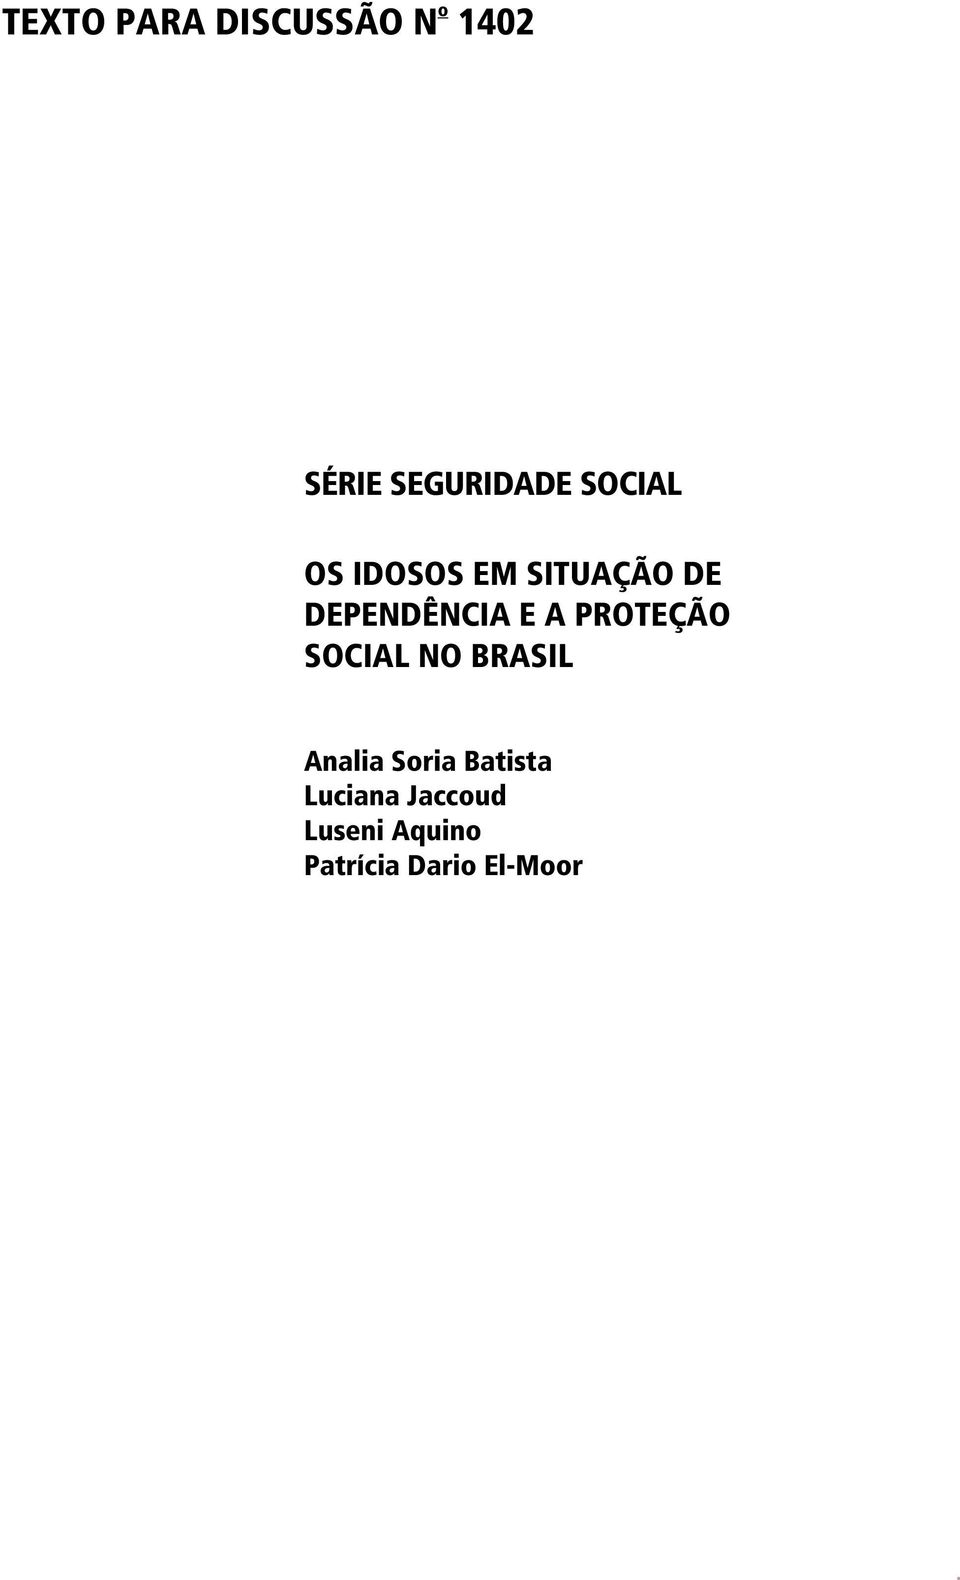 PROTEÇÃO SOCIAL NO BRASIL Analia Soria Batista